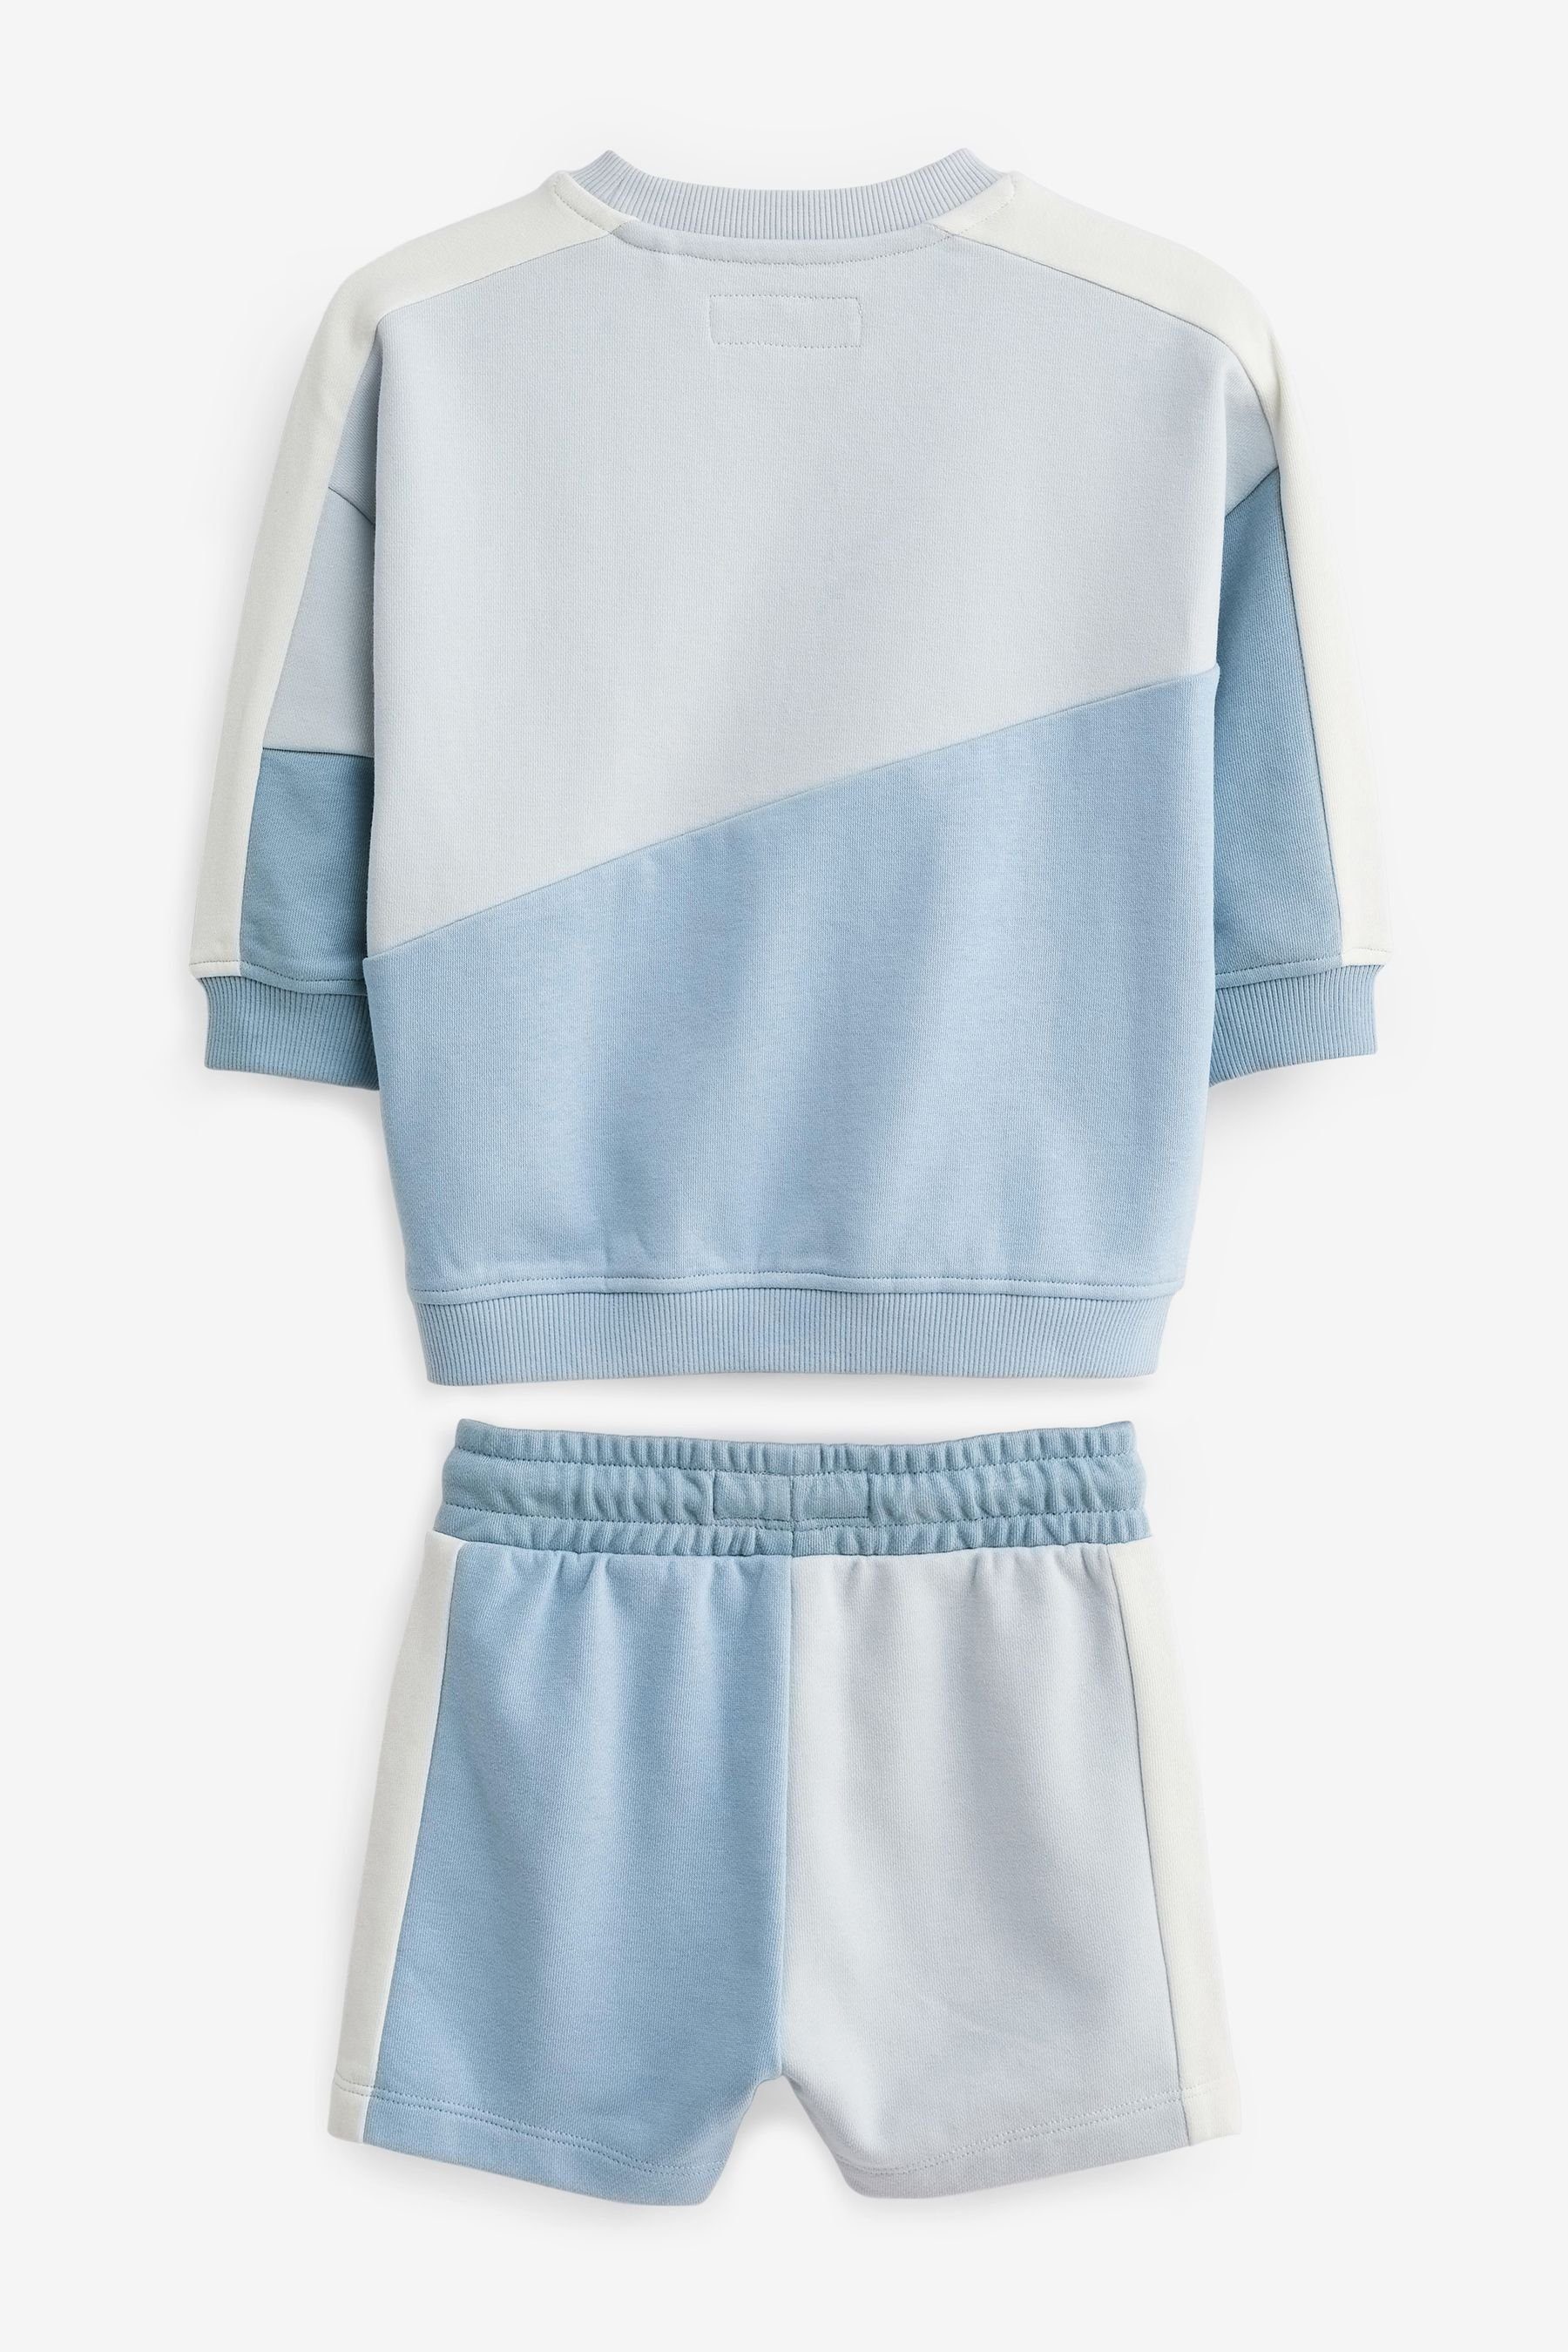 Next Sweatanzug Light Blue im (2-tlg) Set Blockfarben-Sweatshirt Shorts und